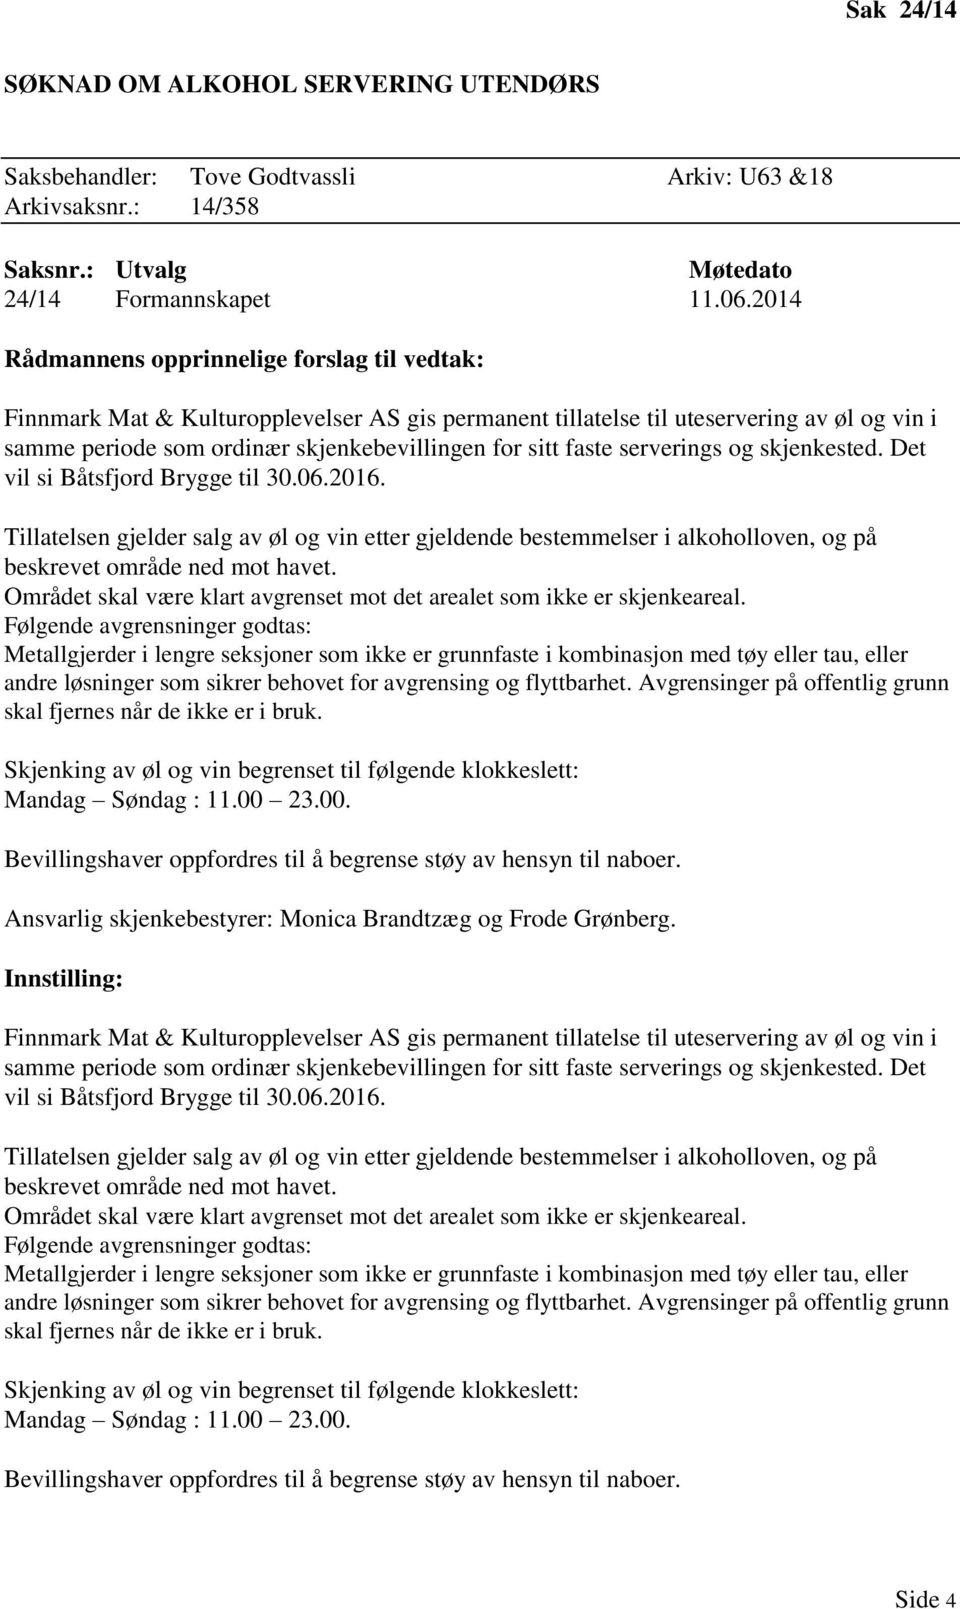 faste serverings og skjenkested. Det vil si Båtsfjord Brygge til 30.06.2016. Tillatelsen gjelder salg av øl og vin etter gjeldende bestemmelser i alkoholloven, og på beskrevet område ned mot havet.